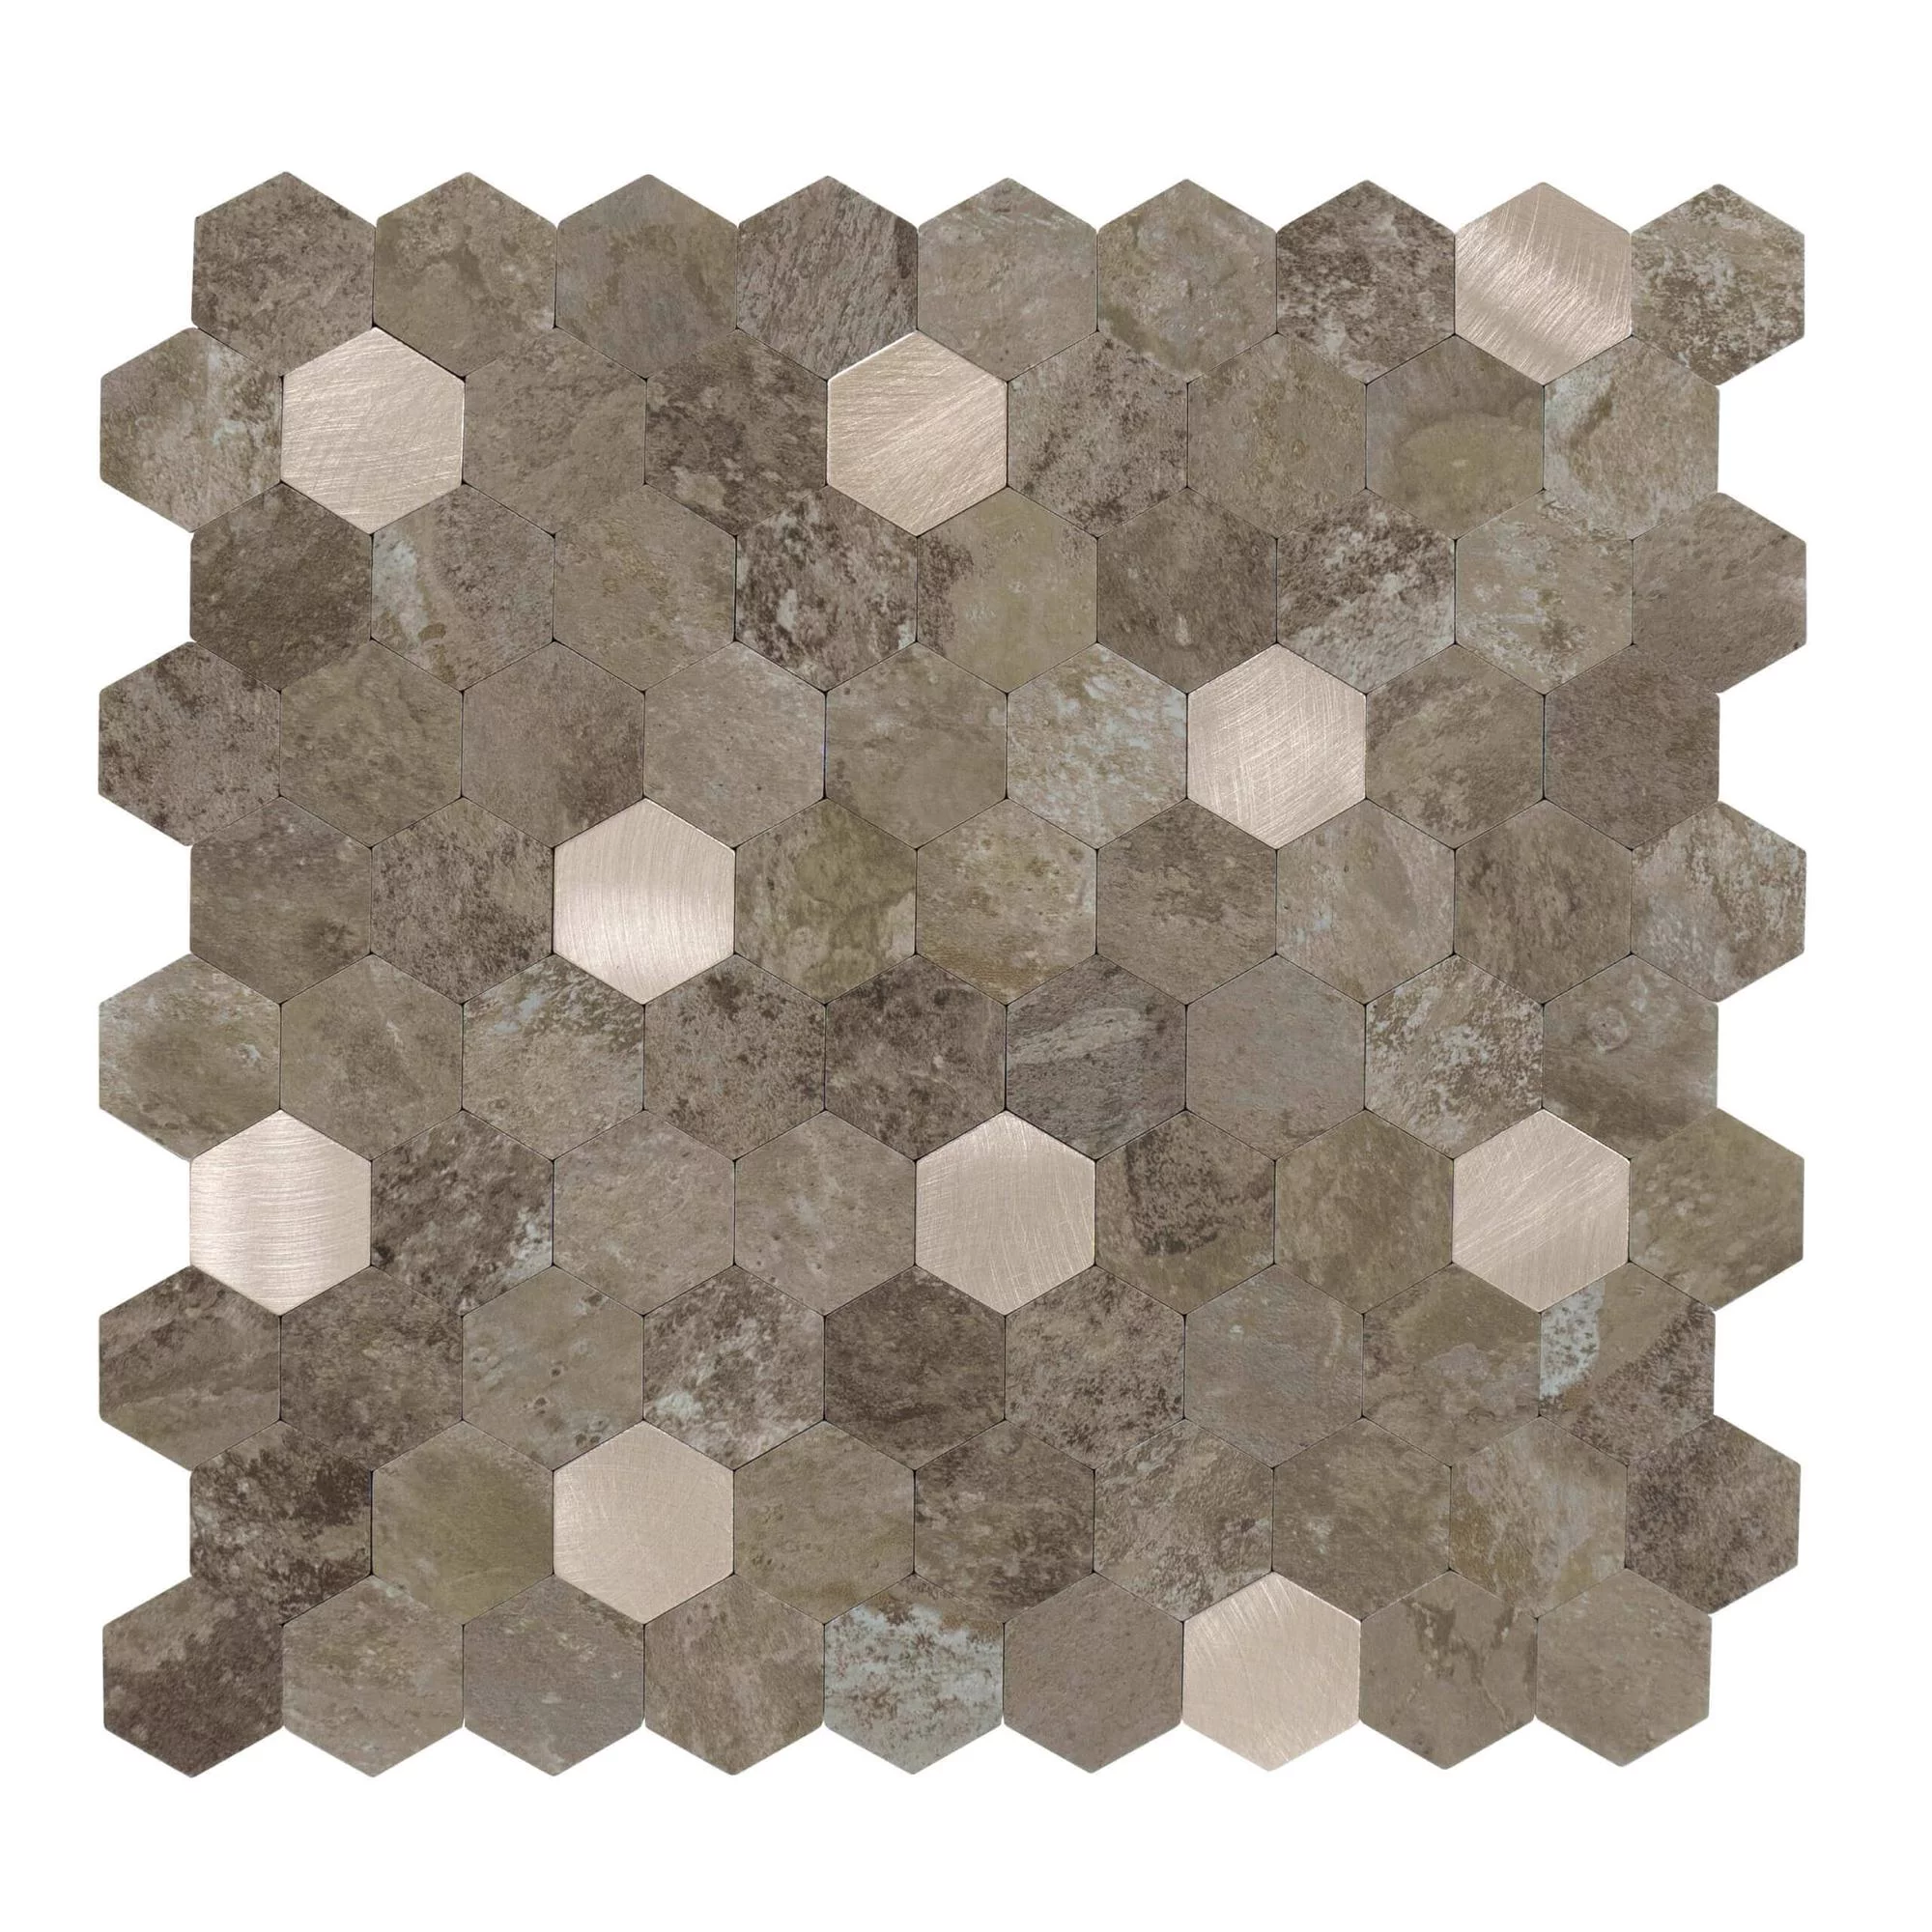 selbstklebende-fliesen-hexagon-form-0.88m².-11-stueck-steinoptik-braun-gold